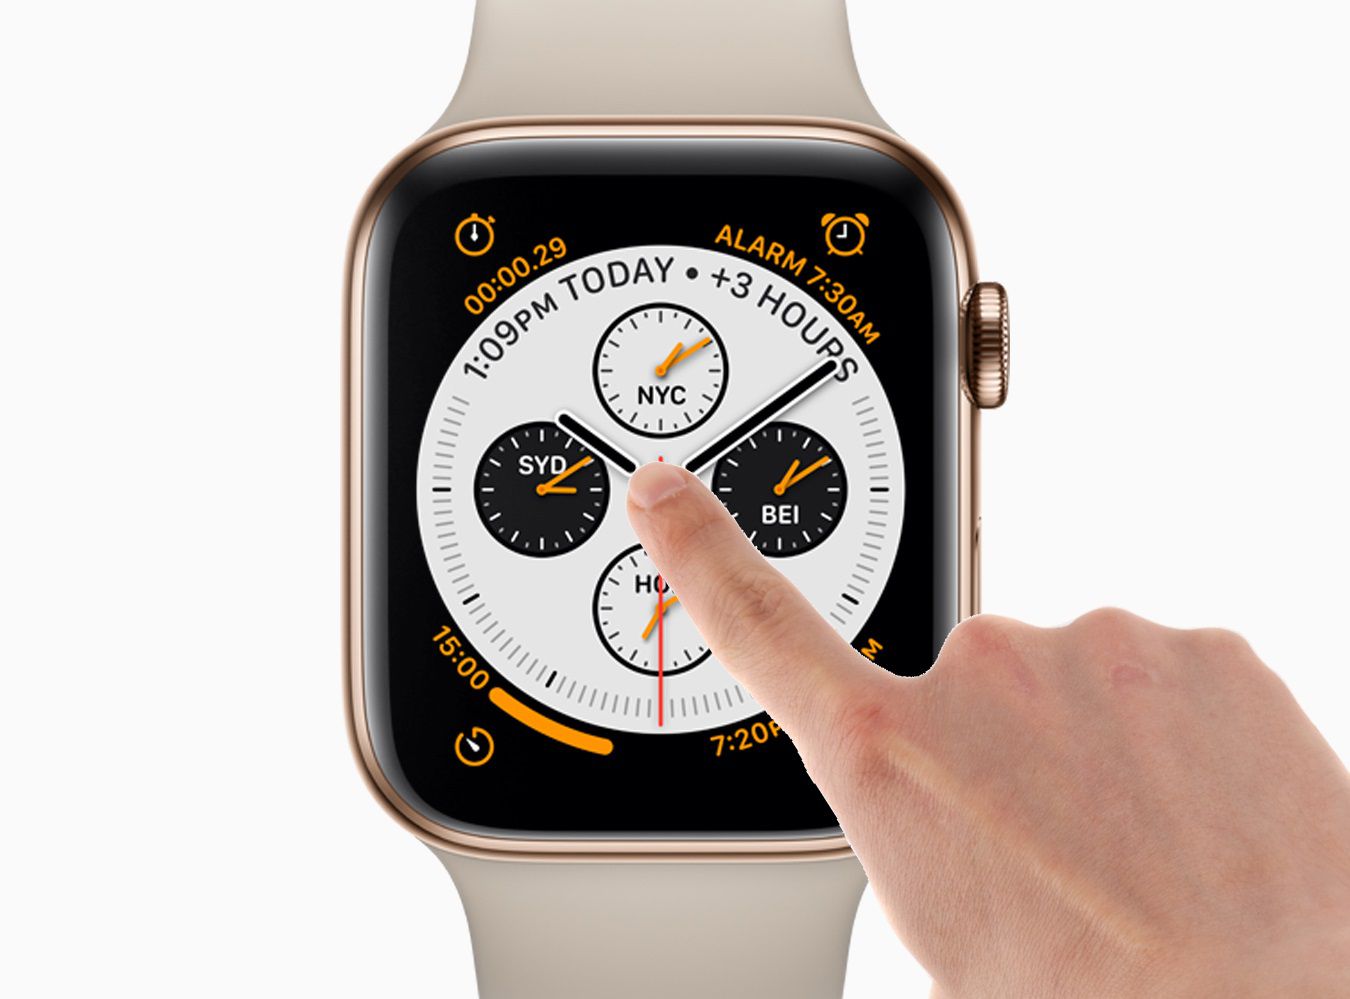 Prst ukázal na displeji Apple Watch